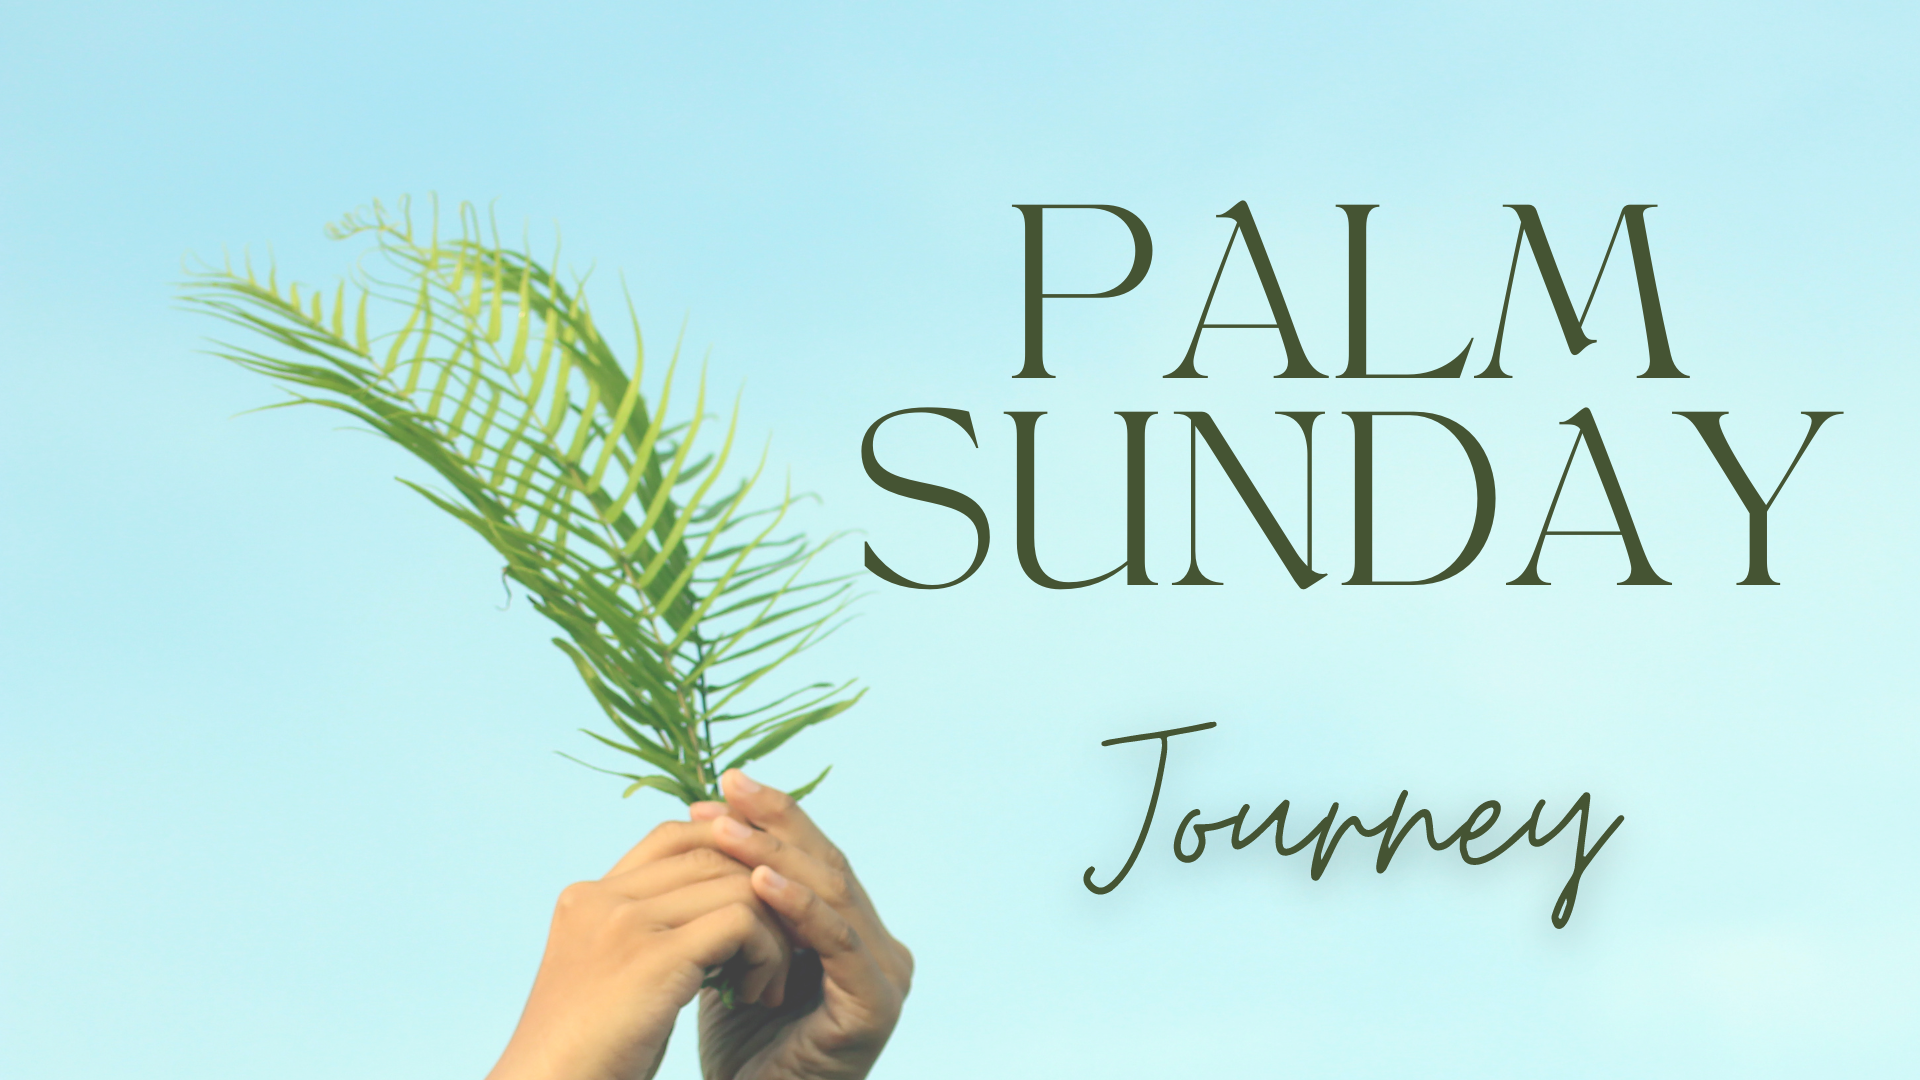 Palm Sunday - Journey